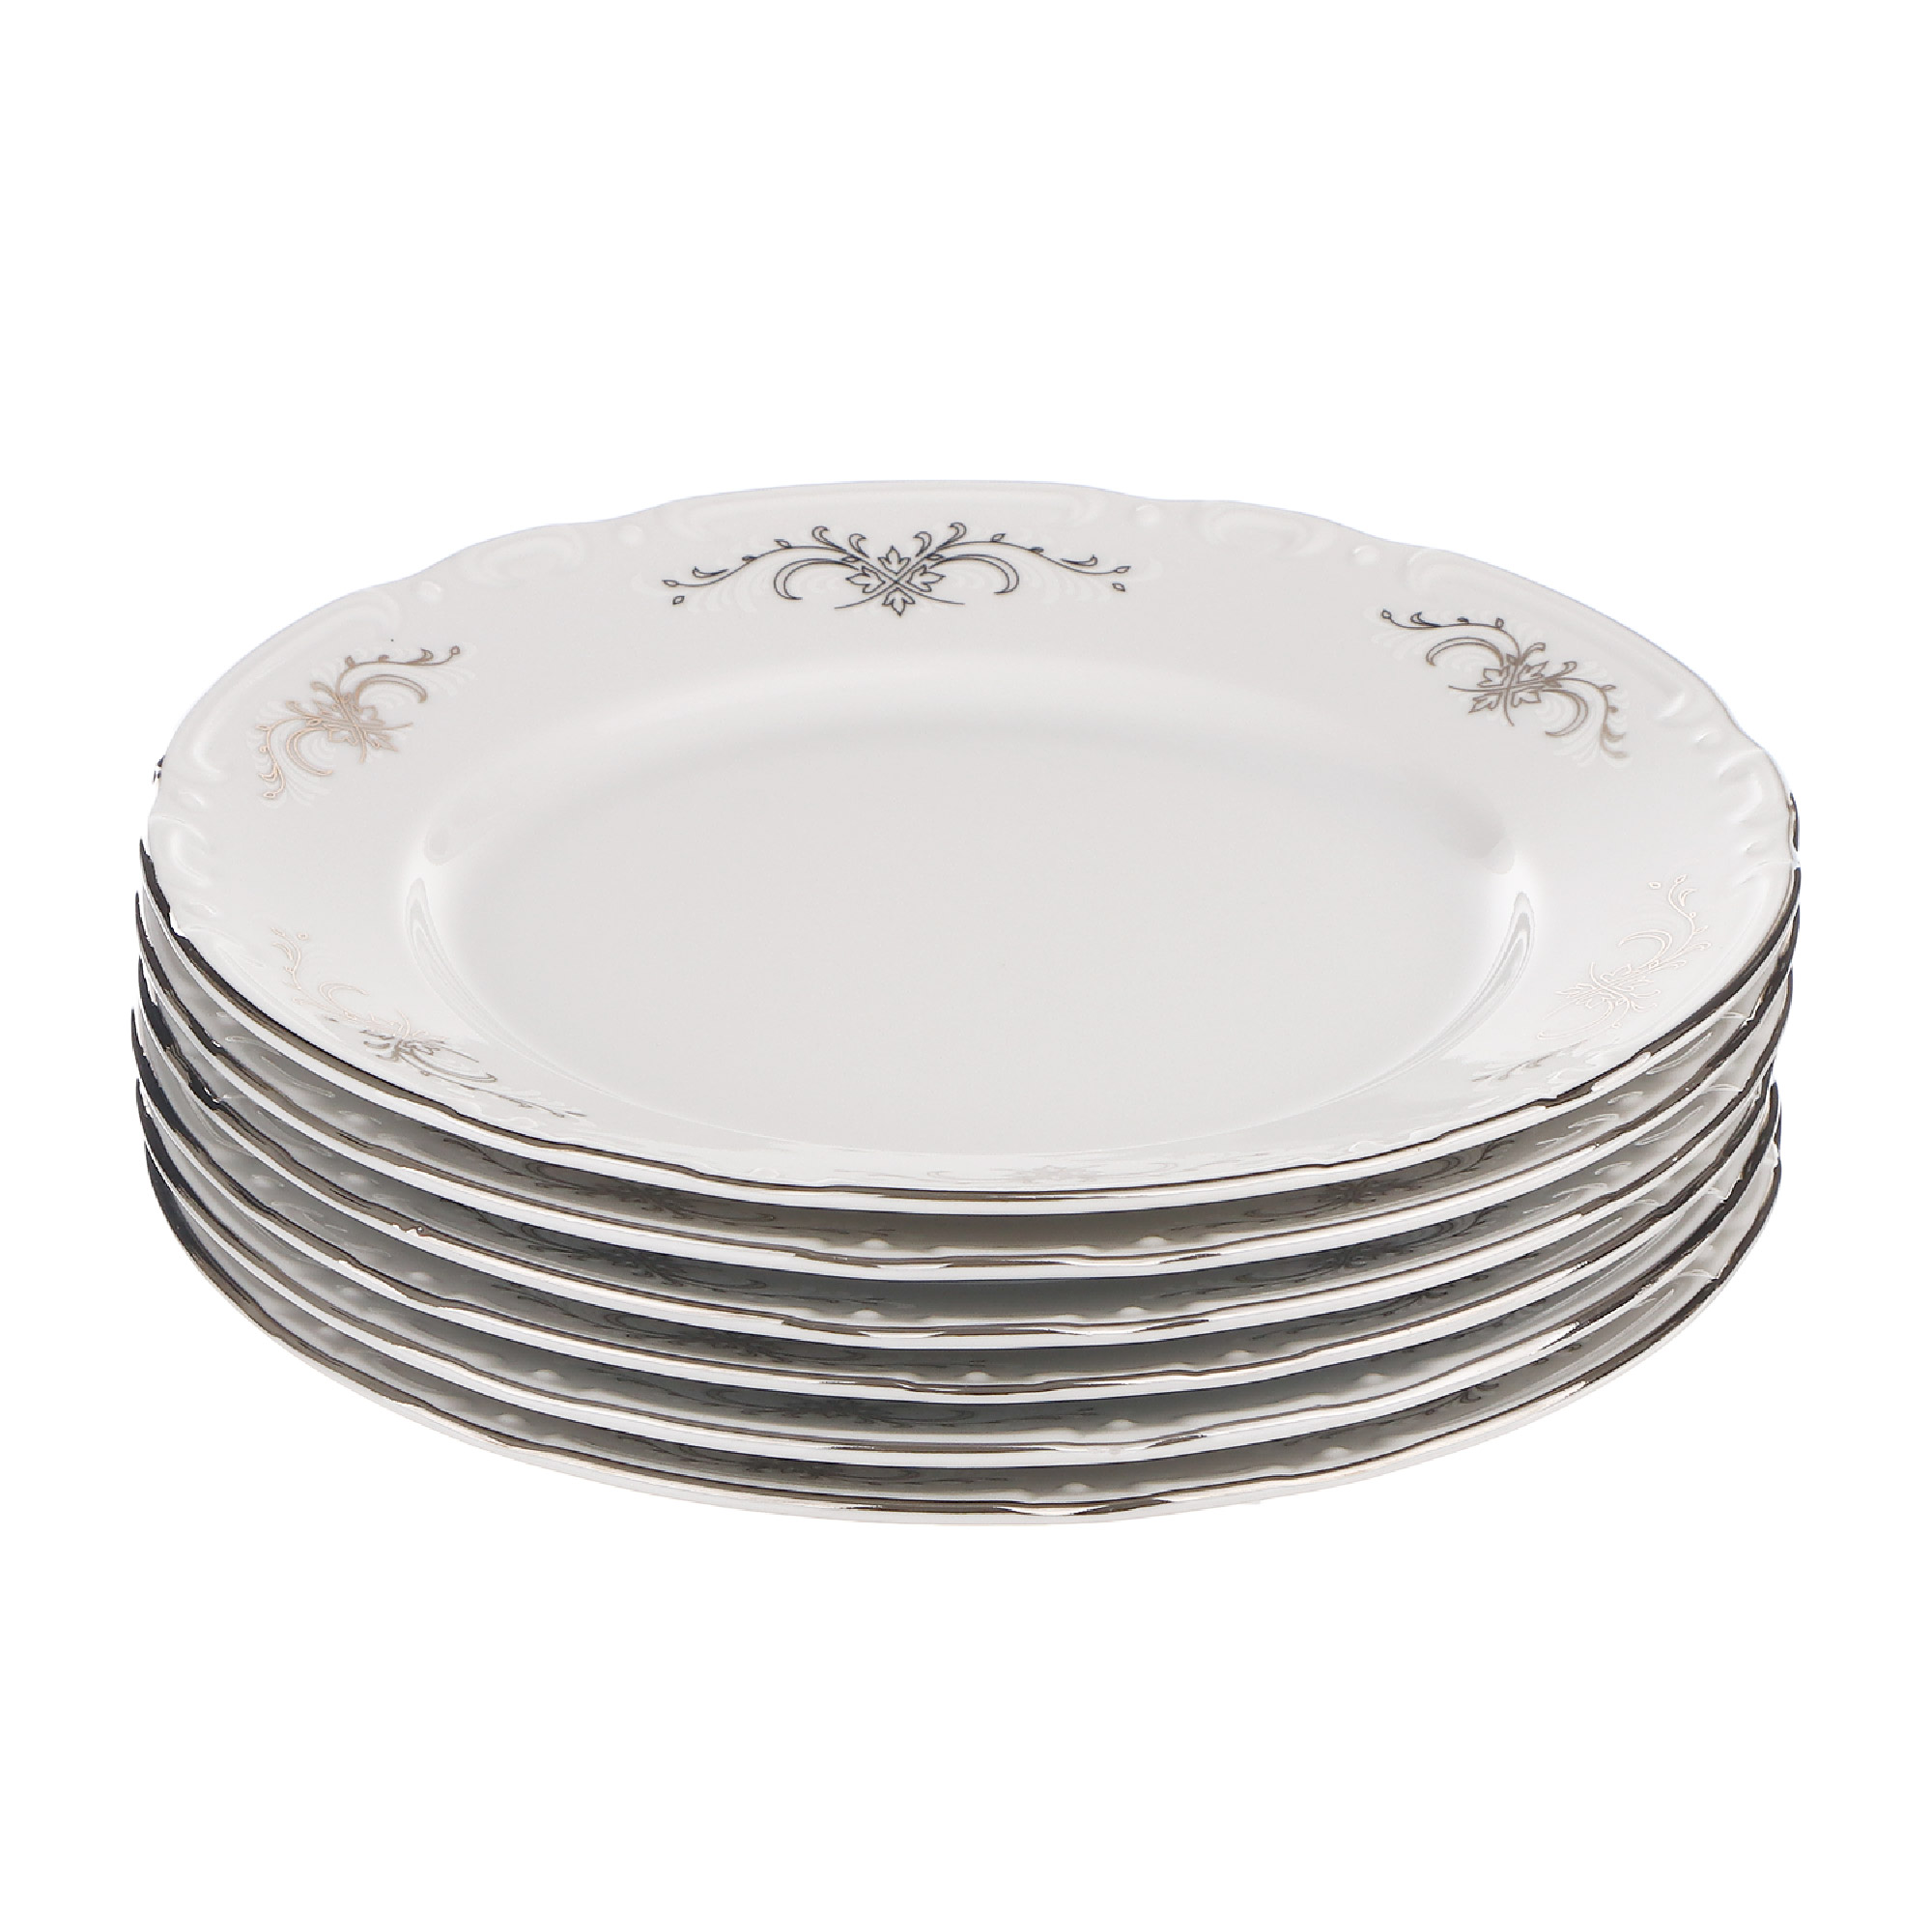 Набор десертных тарелок Thun1794 Констанция 17 см 6 шт салатник olaff констанция 700 мл диаметр 175 мм арт 130 21079